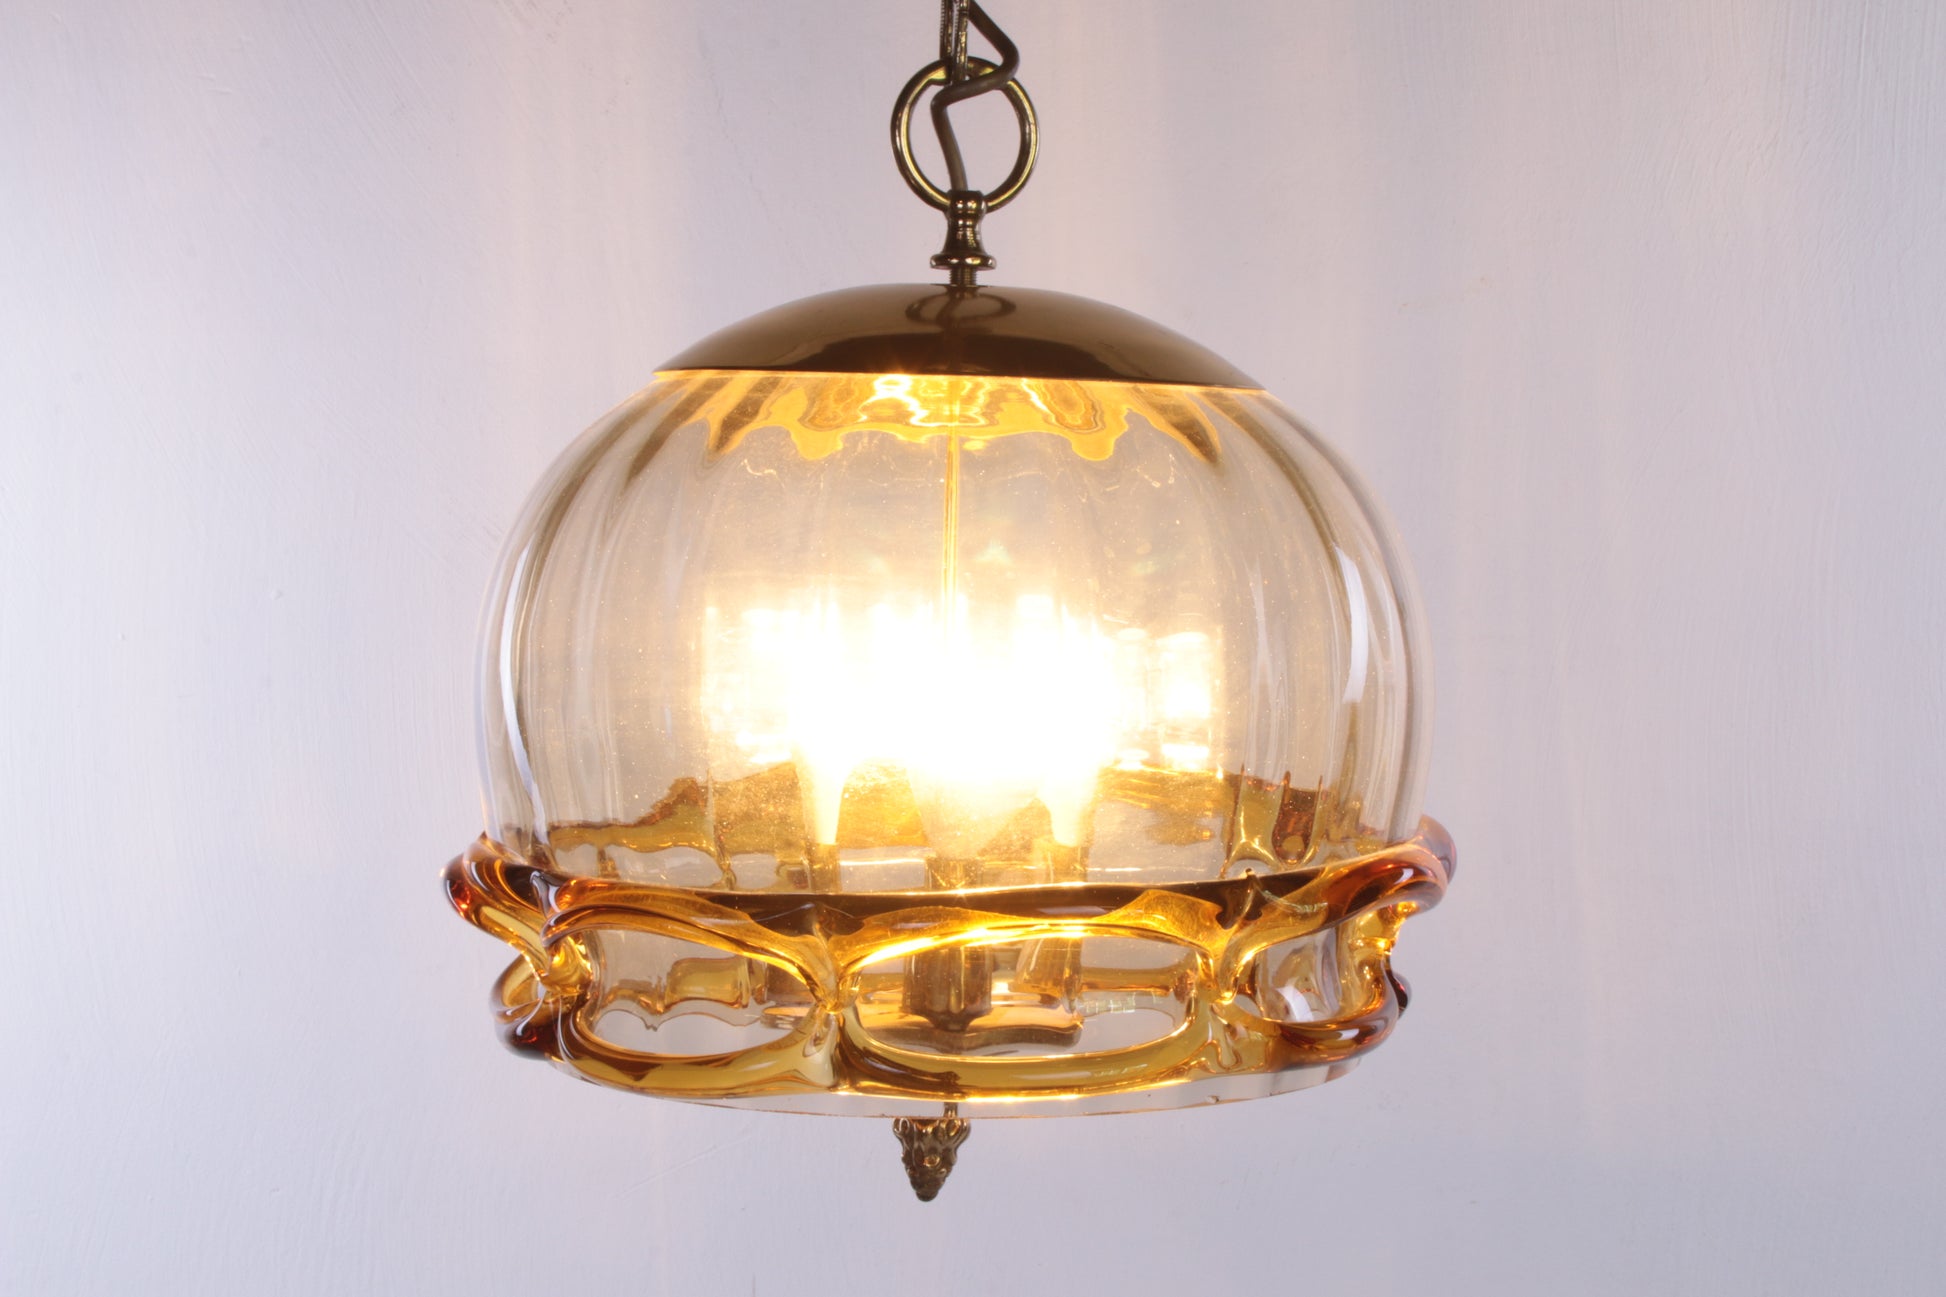 Hollywood Regency Hanglamp met Murano glas,Fischer Leuchten 70s voorkant licht aan